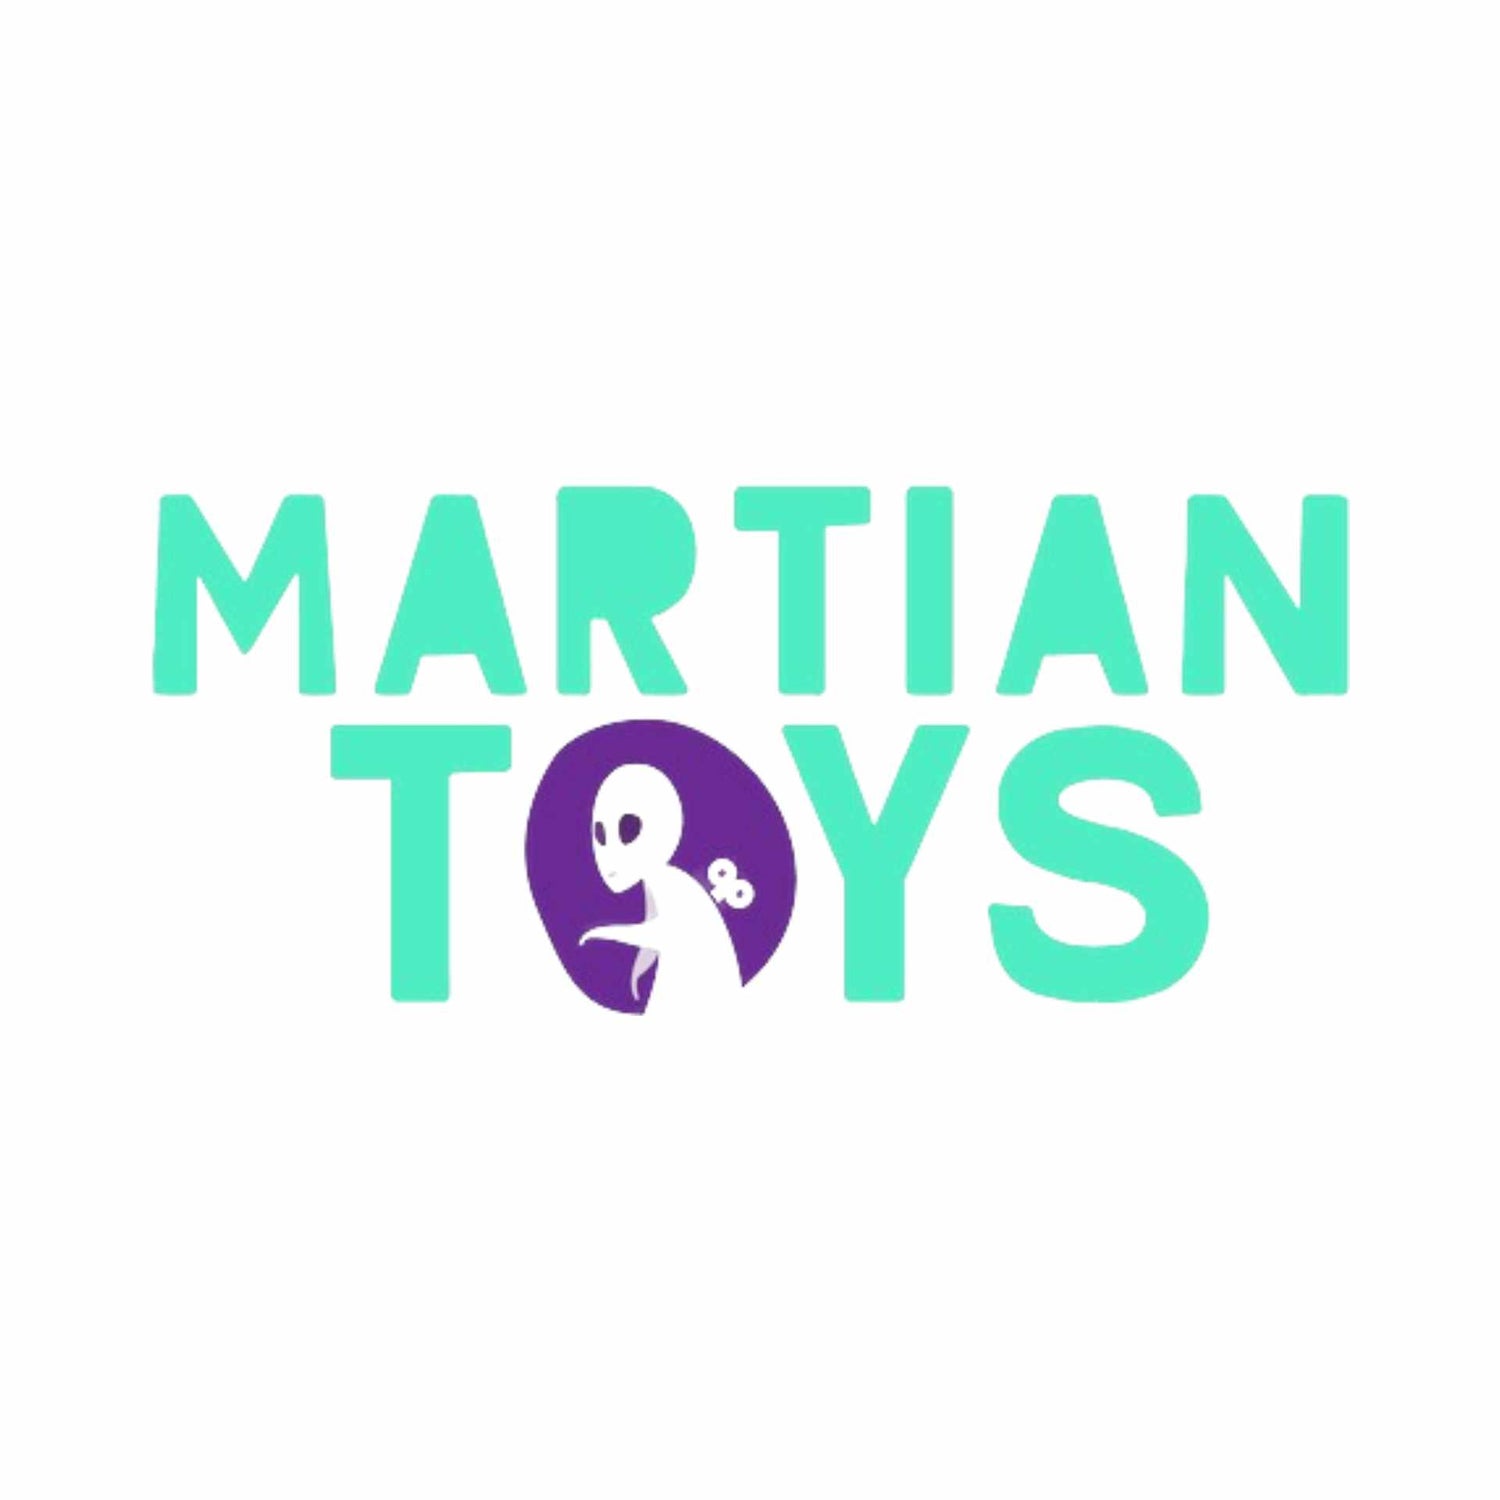 MARTIAN TOYS